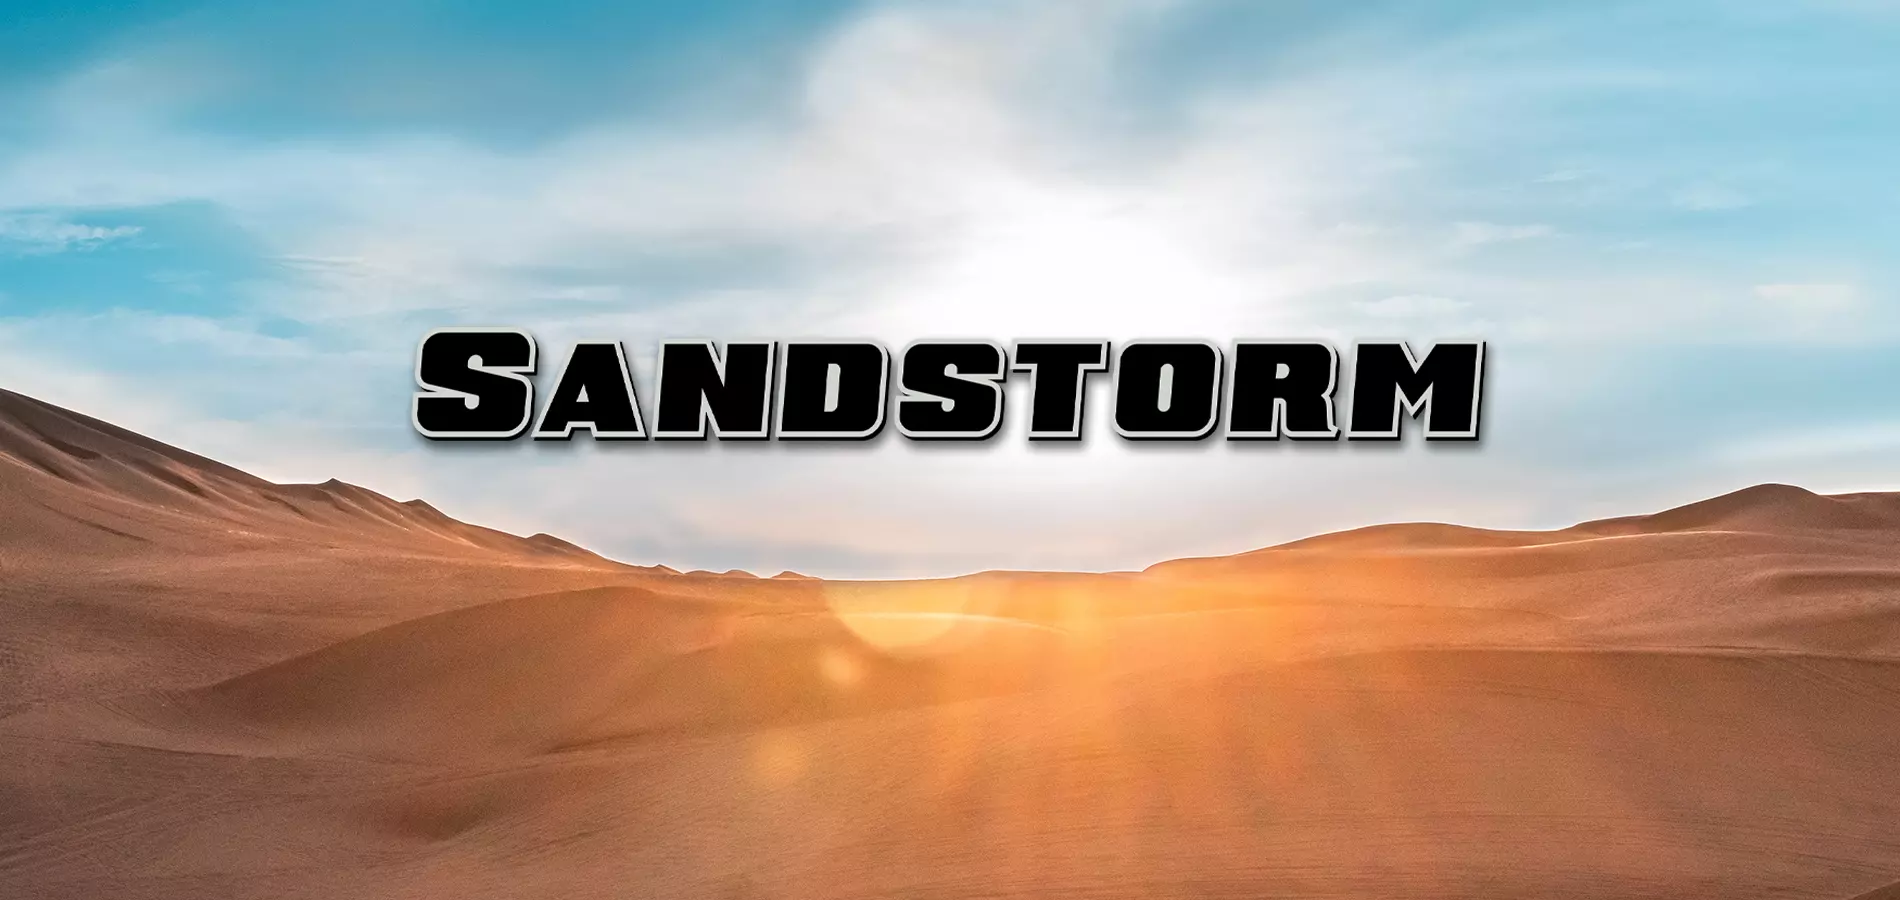 Sandstorm Forest River Rv Manufacturer Of Travel